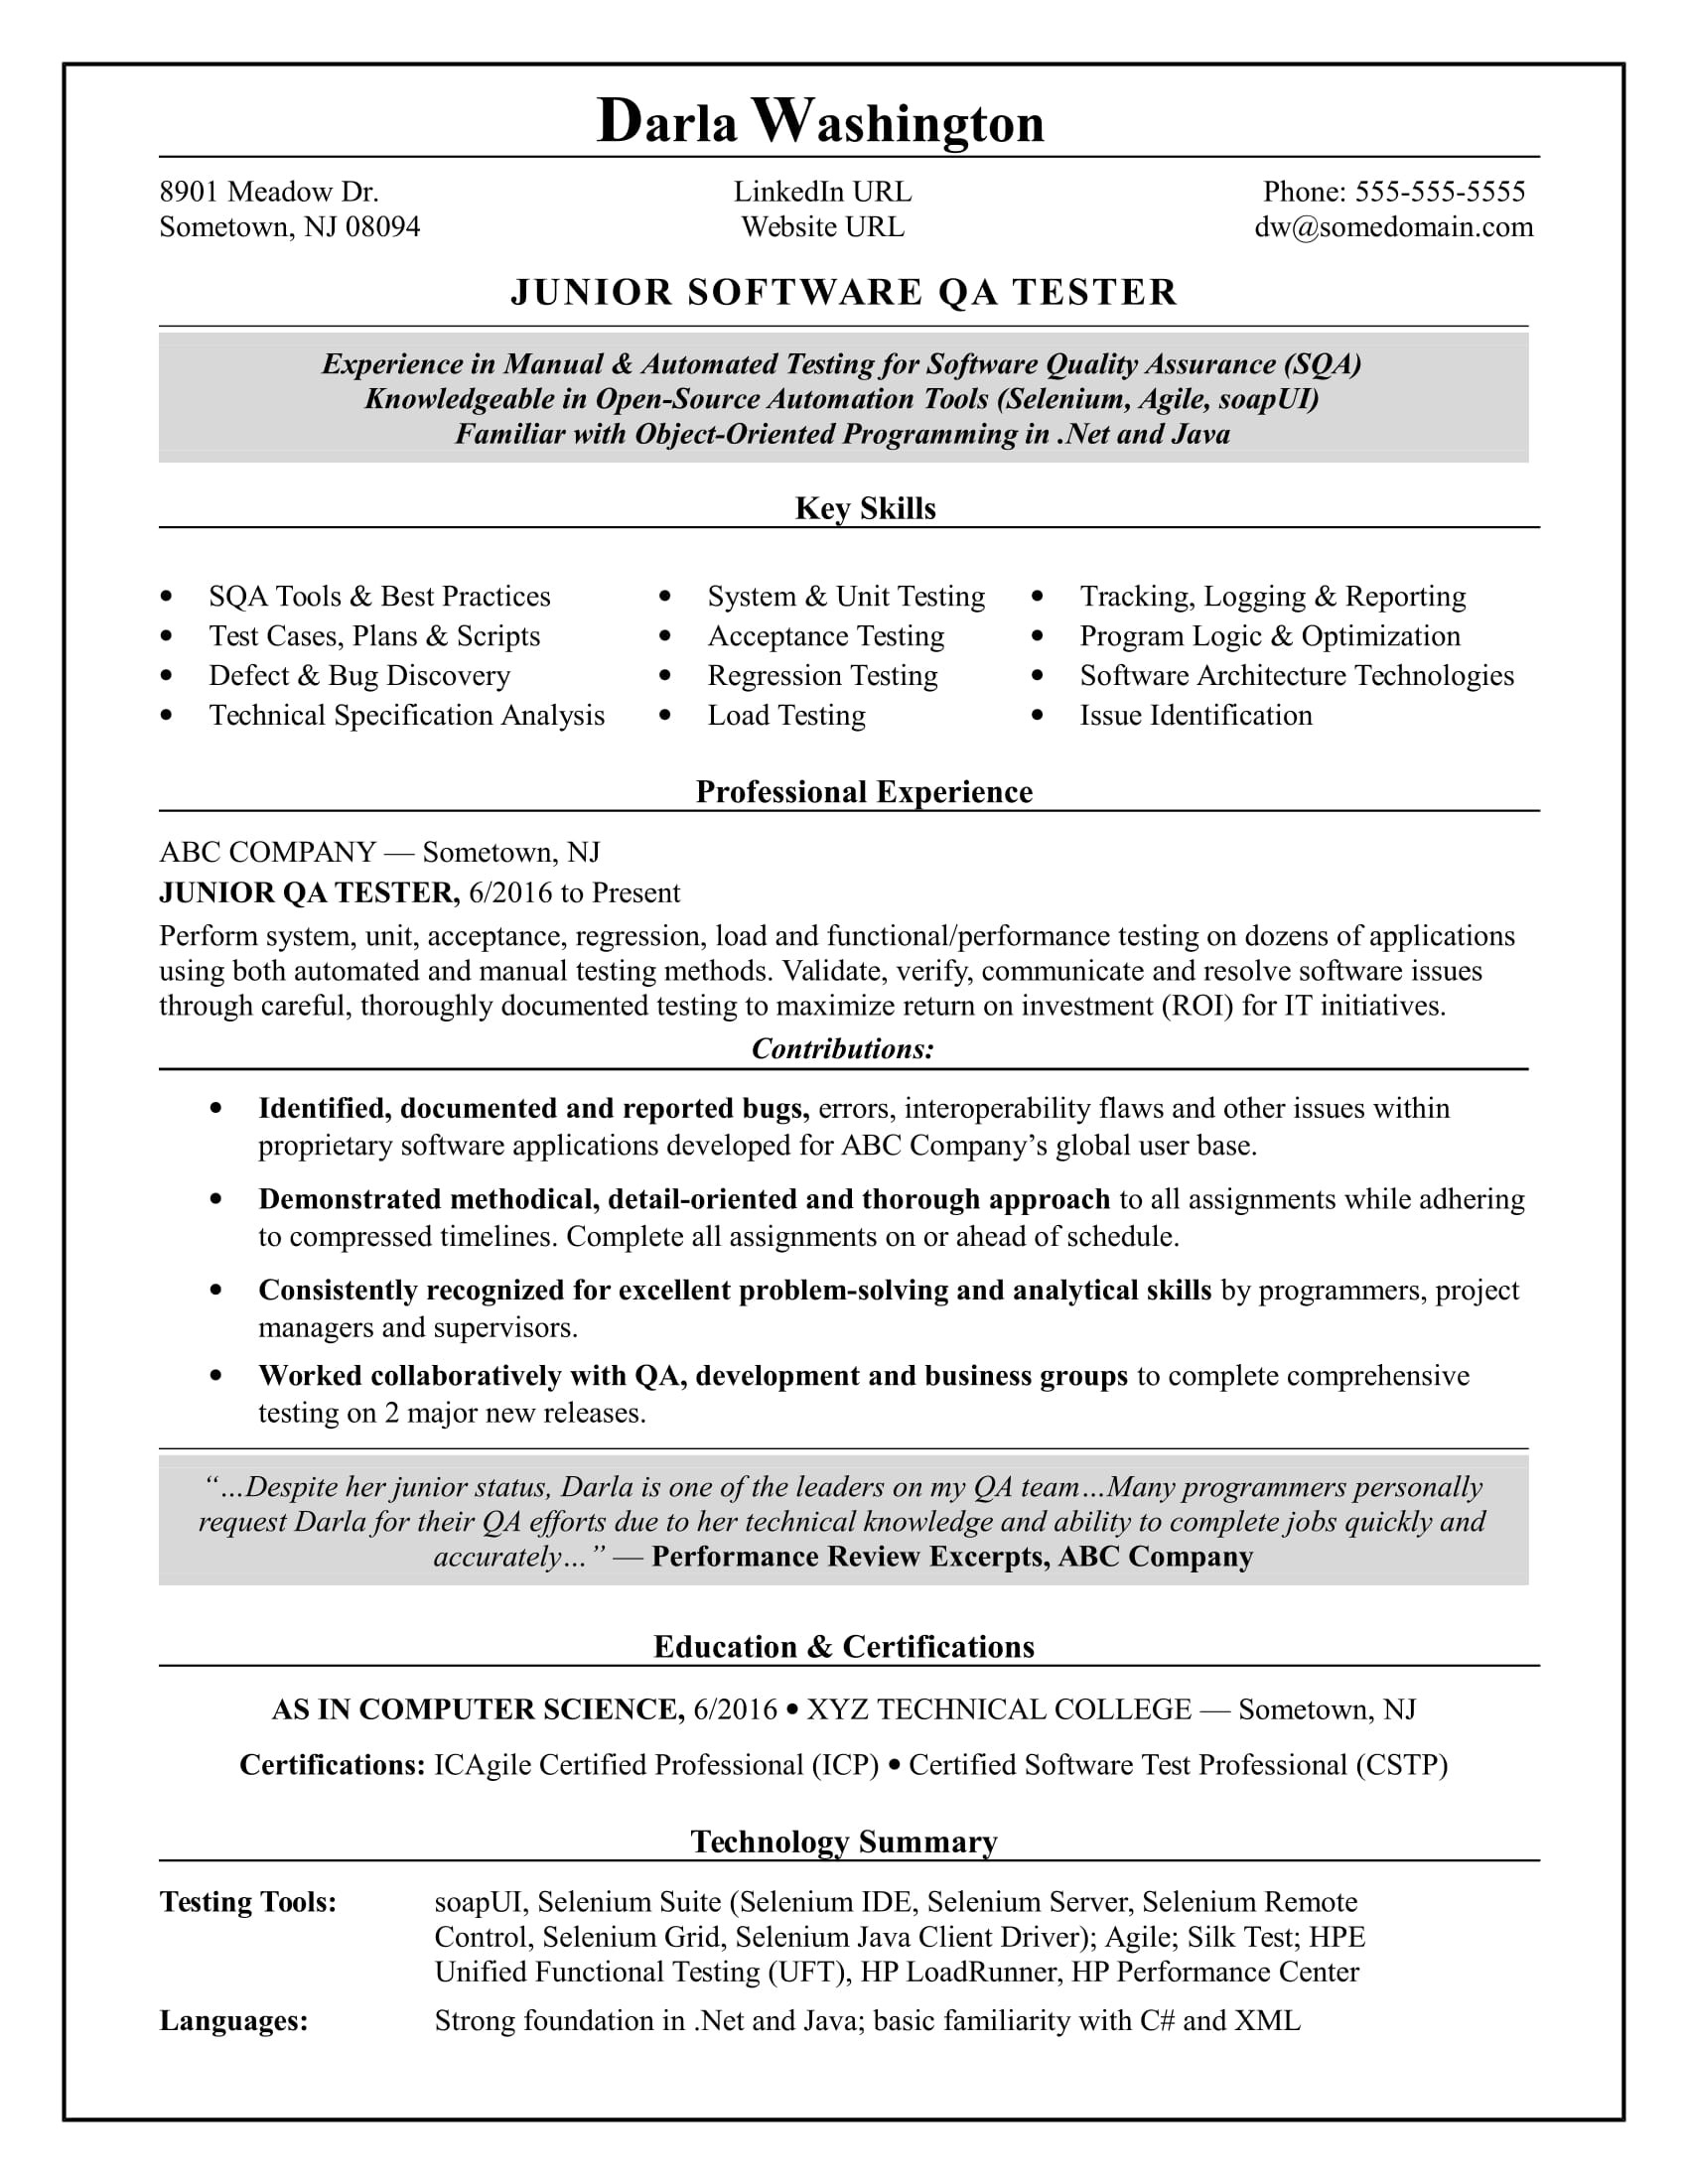 Sample Resume for Selenium Automation Tester Fresher Entry-level Qa software Tester Resume Sample Monster.com